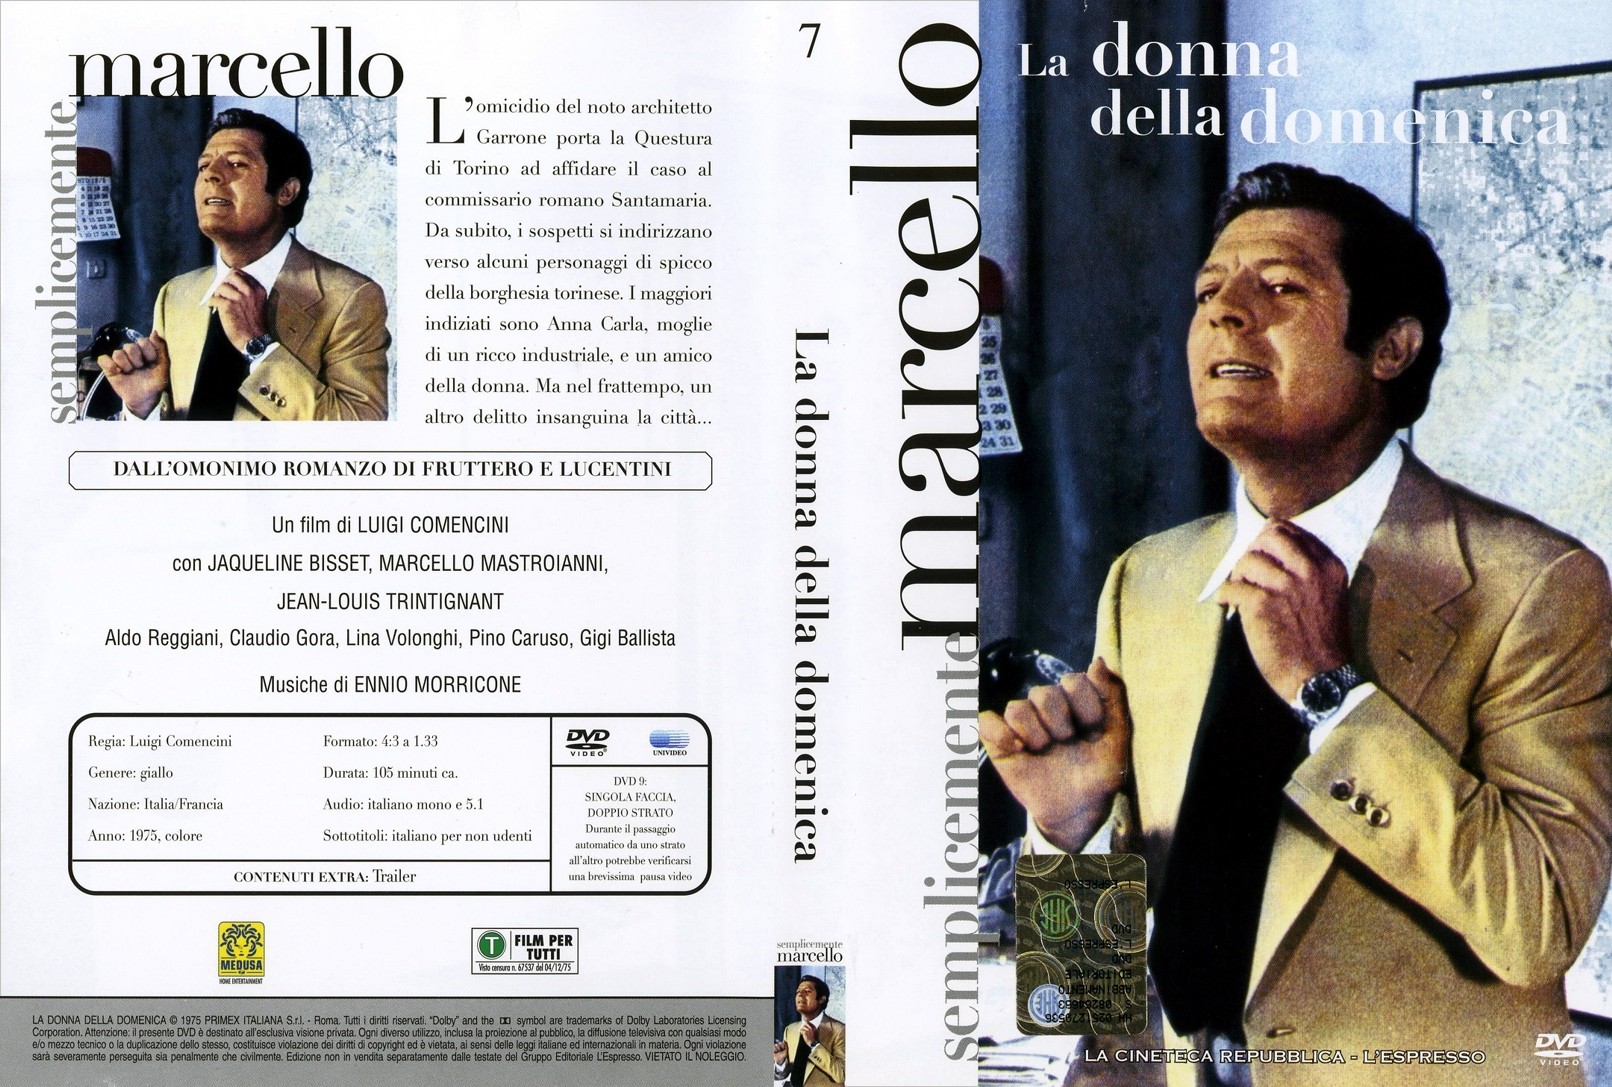 Copertina e retrocopertina DVD del film de La Donna della Domenica.